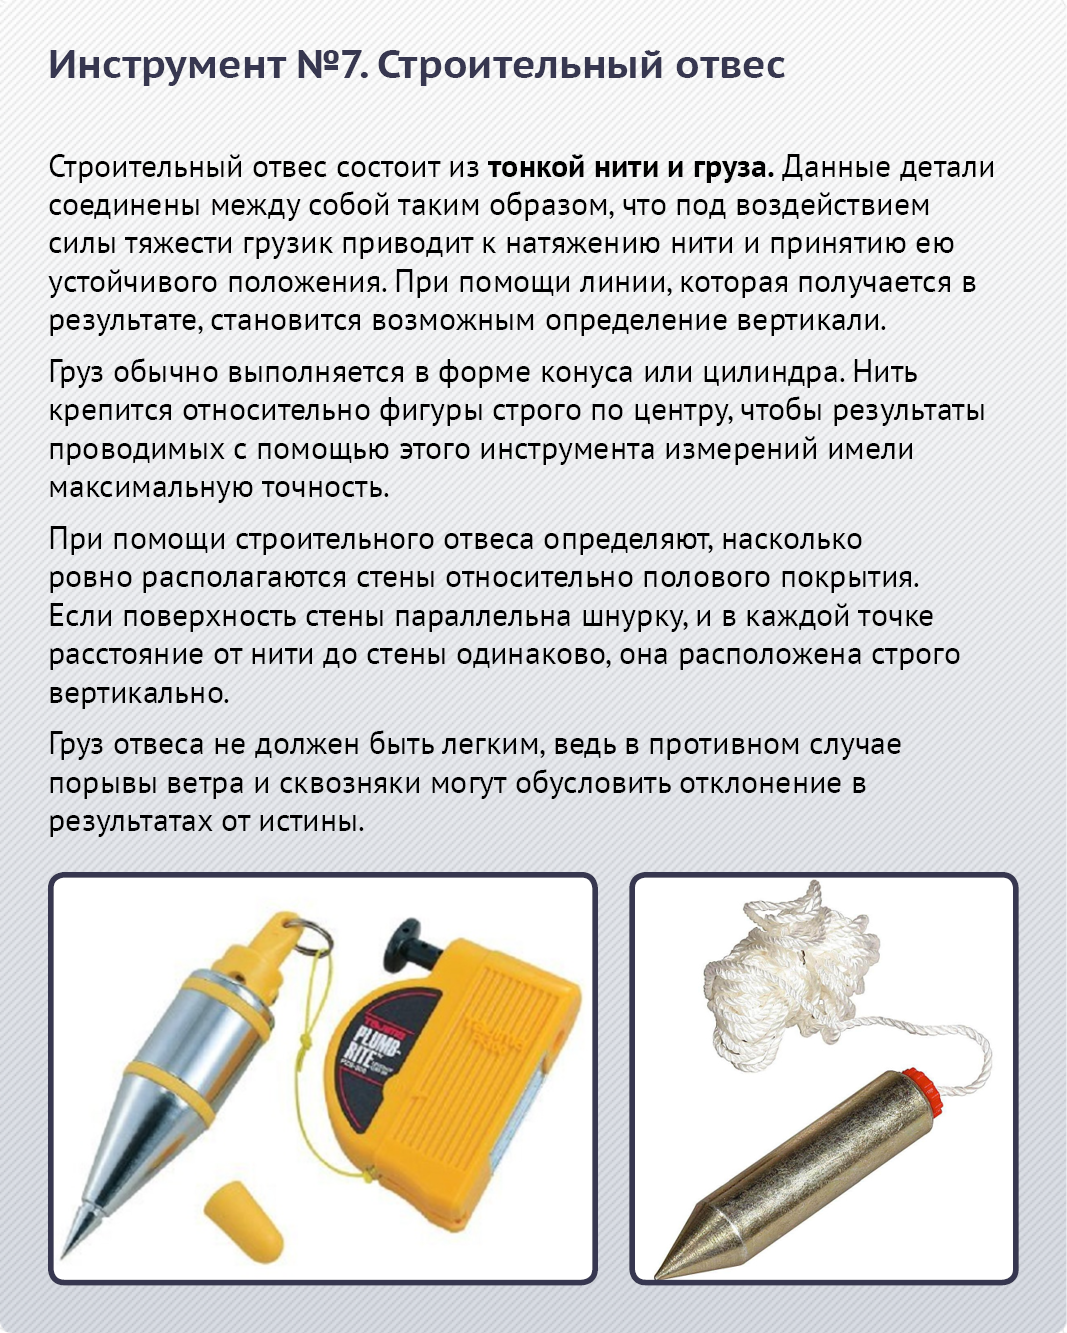 Инструменты для паркетных работ | opolax.ru